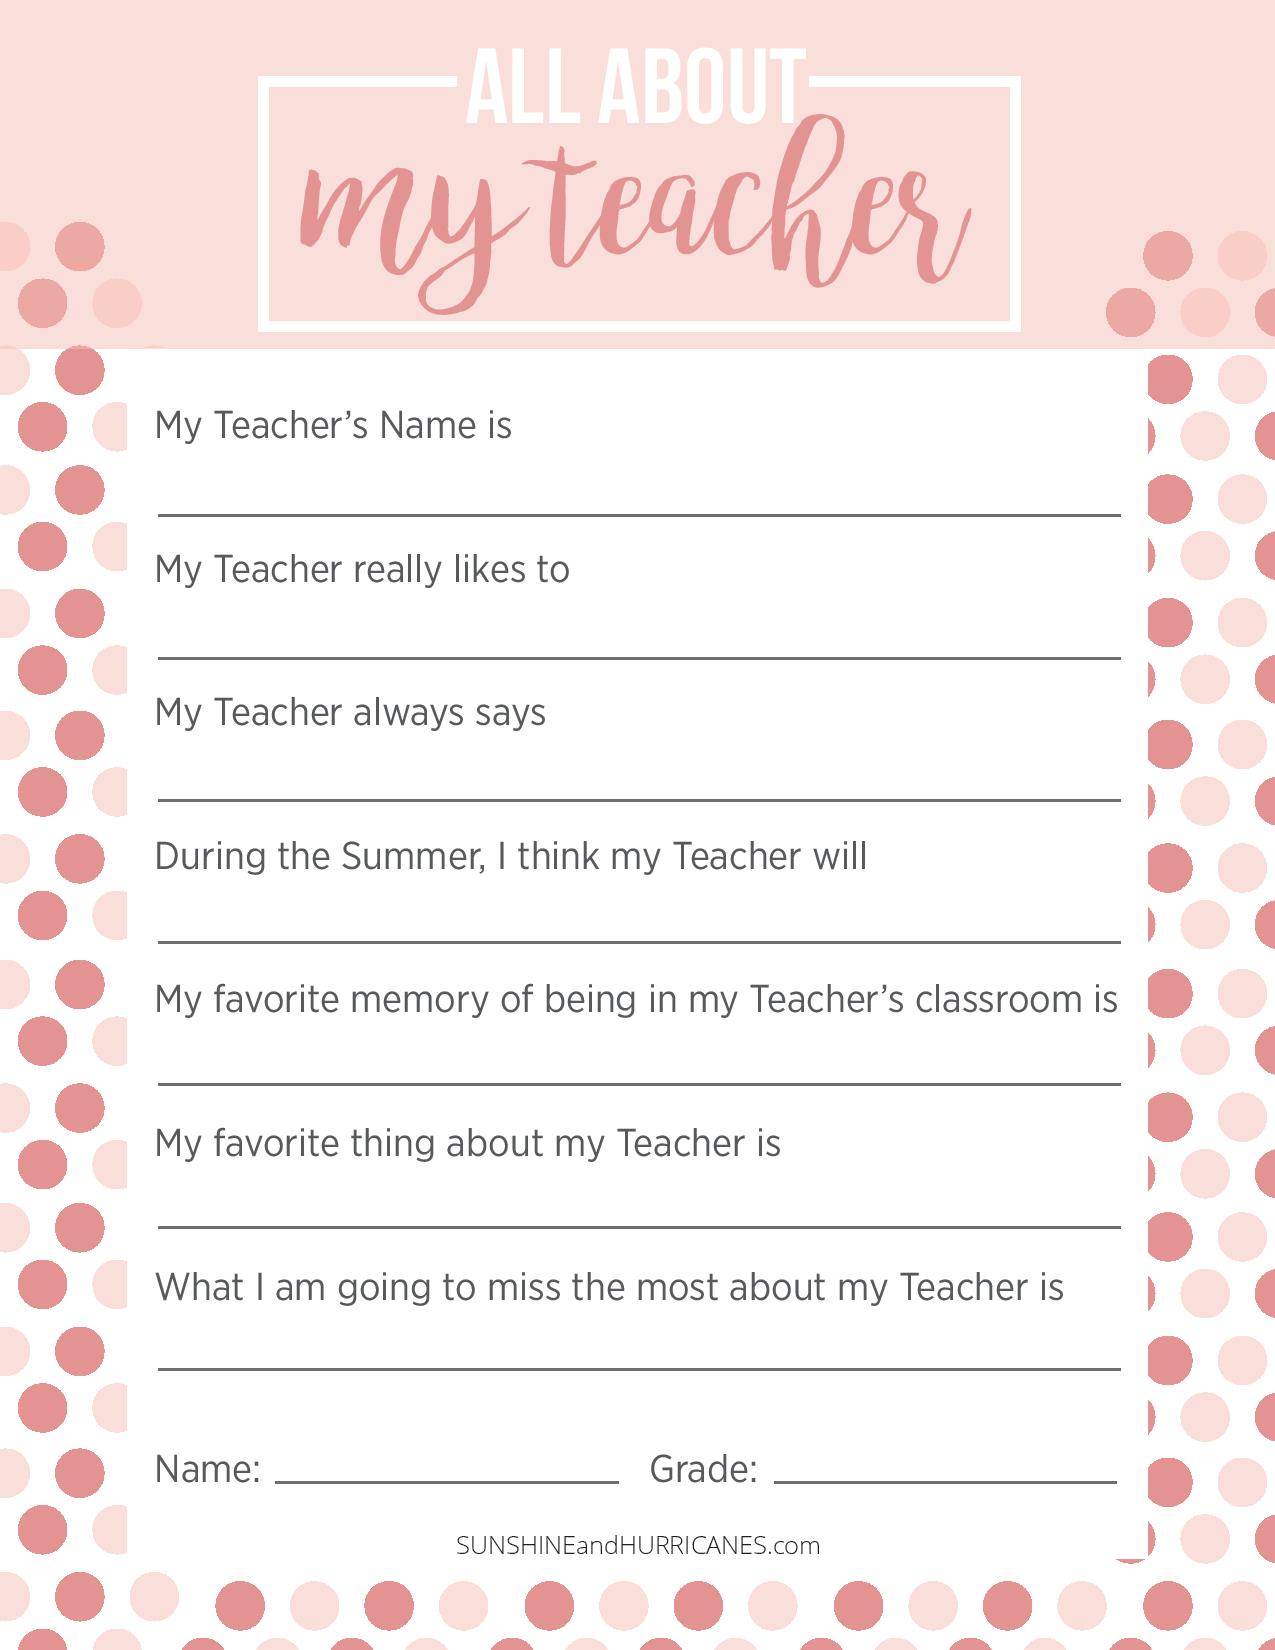 teacher-appreciation-week-questionnaire-a-personalized-teacher-gift